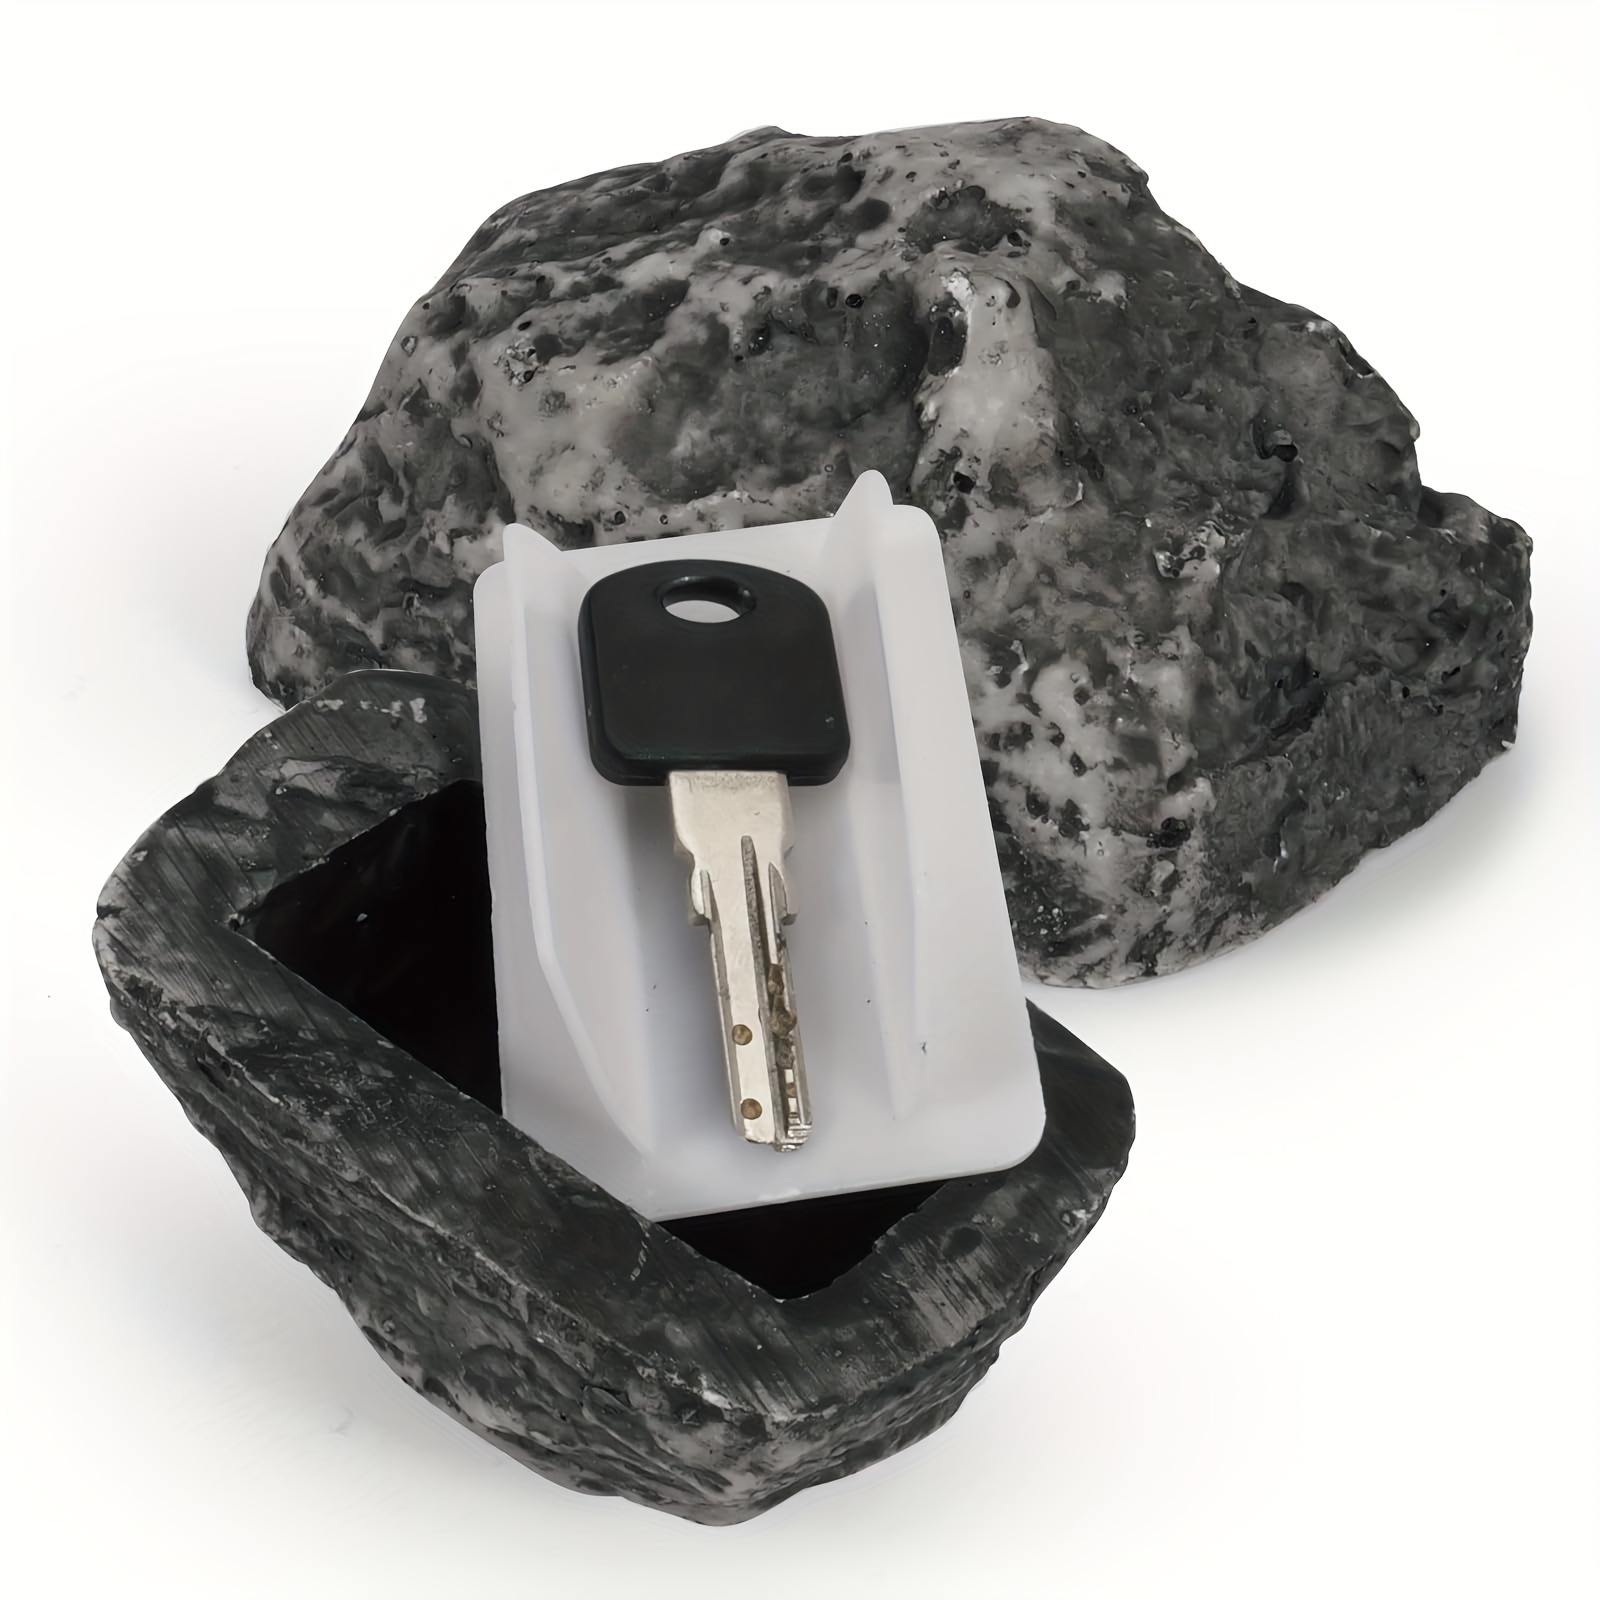 Aufbewahrungsbox Für Schlüssel Aus Stein, Versteckt In Steinen